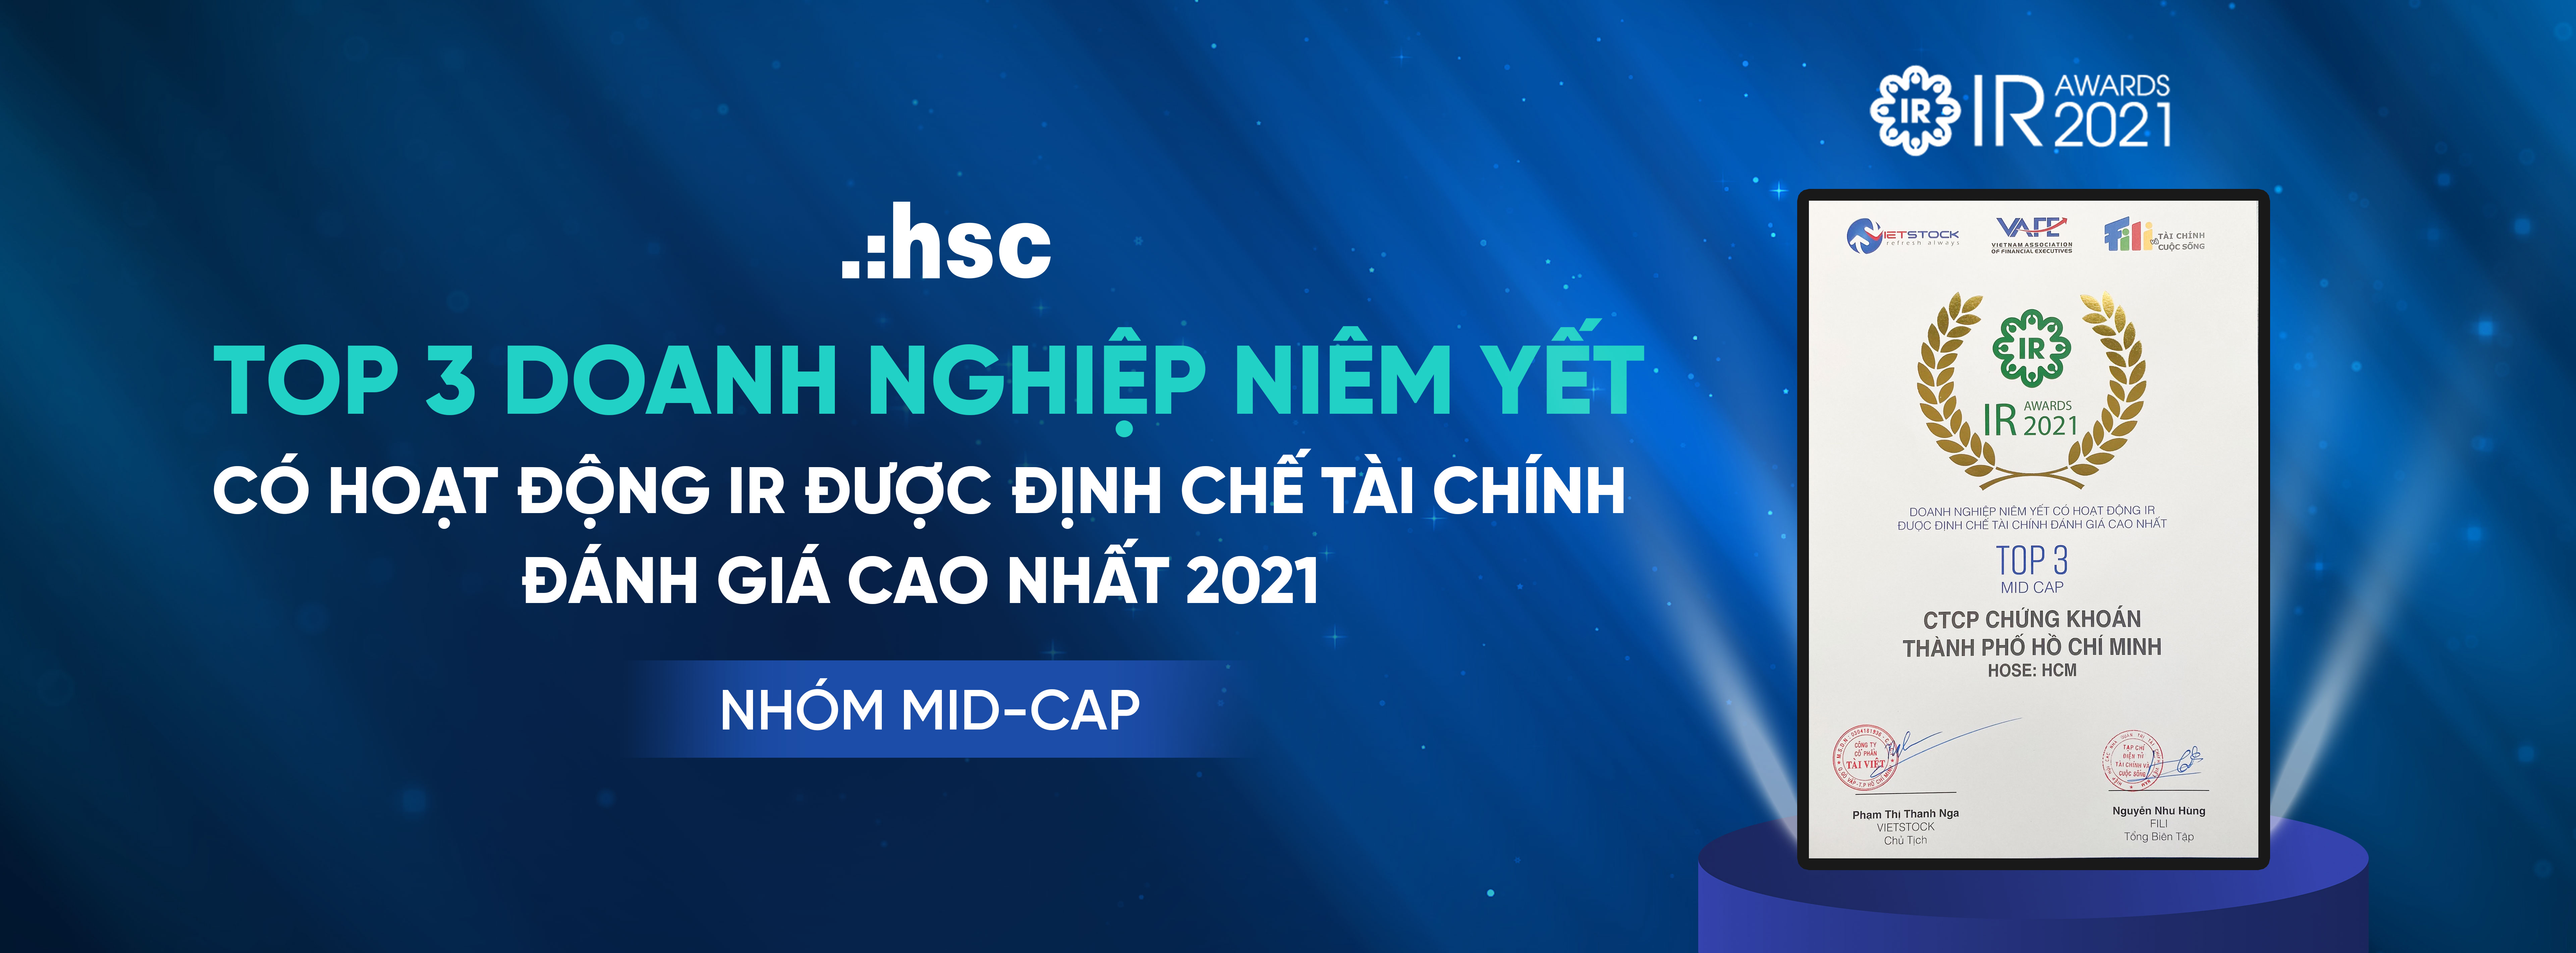 HSC – Top 3 doanh nghiệp niêm yết có hoạt động IR được định chế tài chính đánh giá cao nhất 2021 – Nhóm MIP-CAP